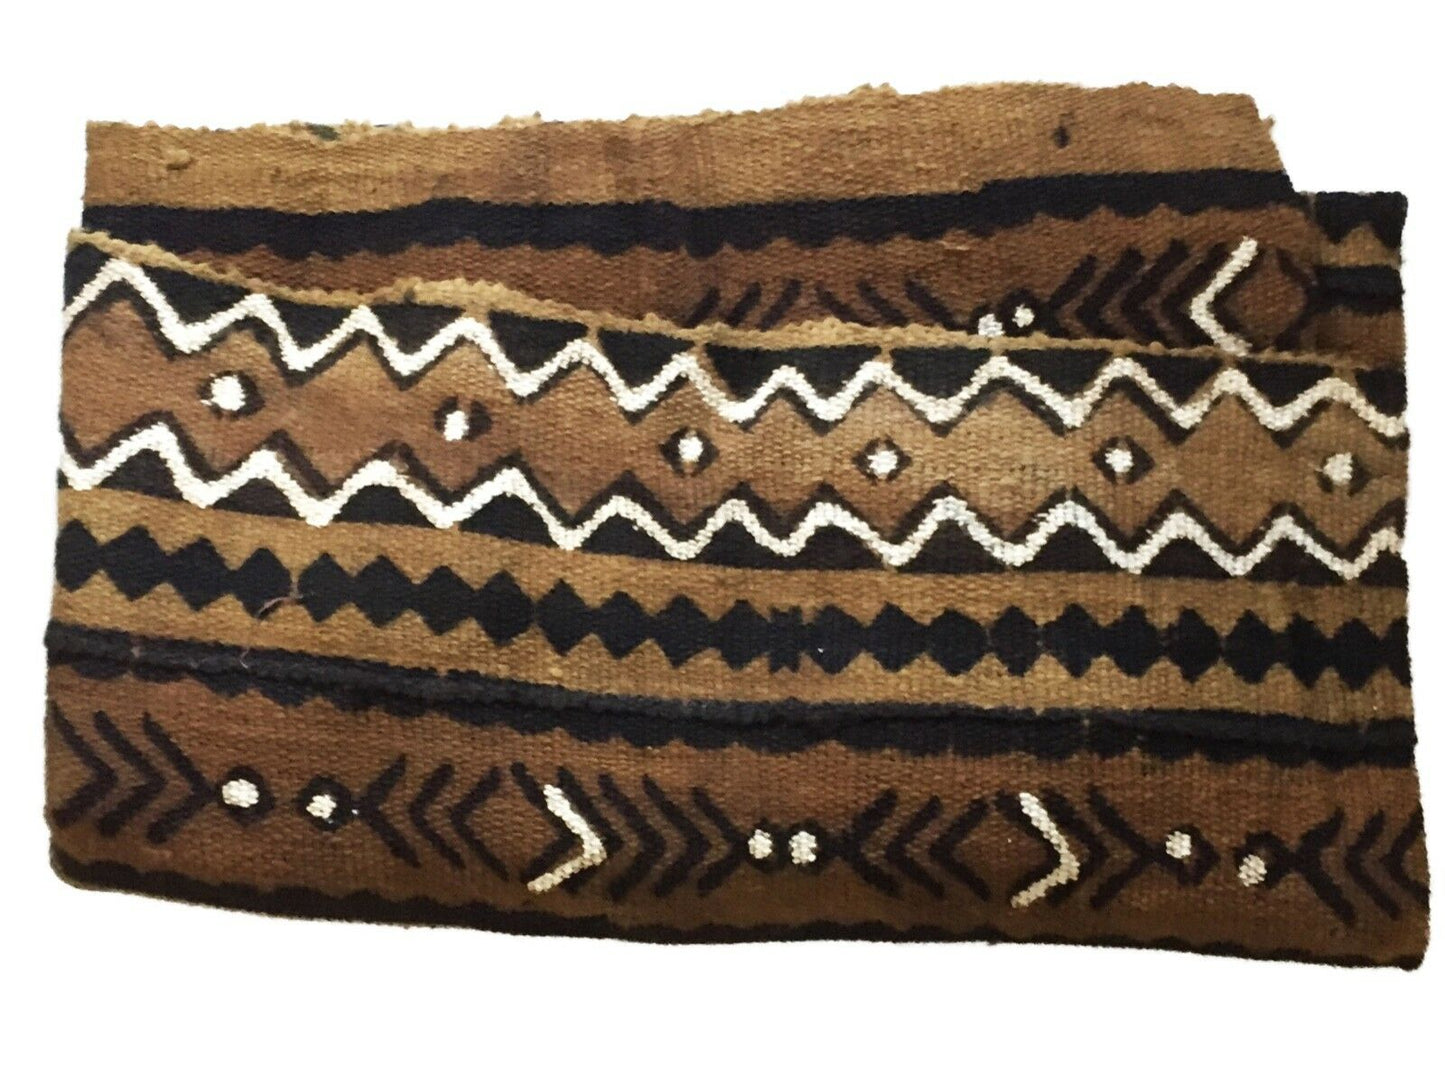 Superb Bogolan Mali Mud Cloth Textile 40" by 64" # 1813